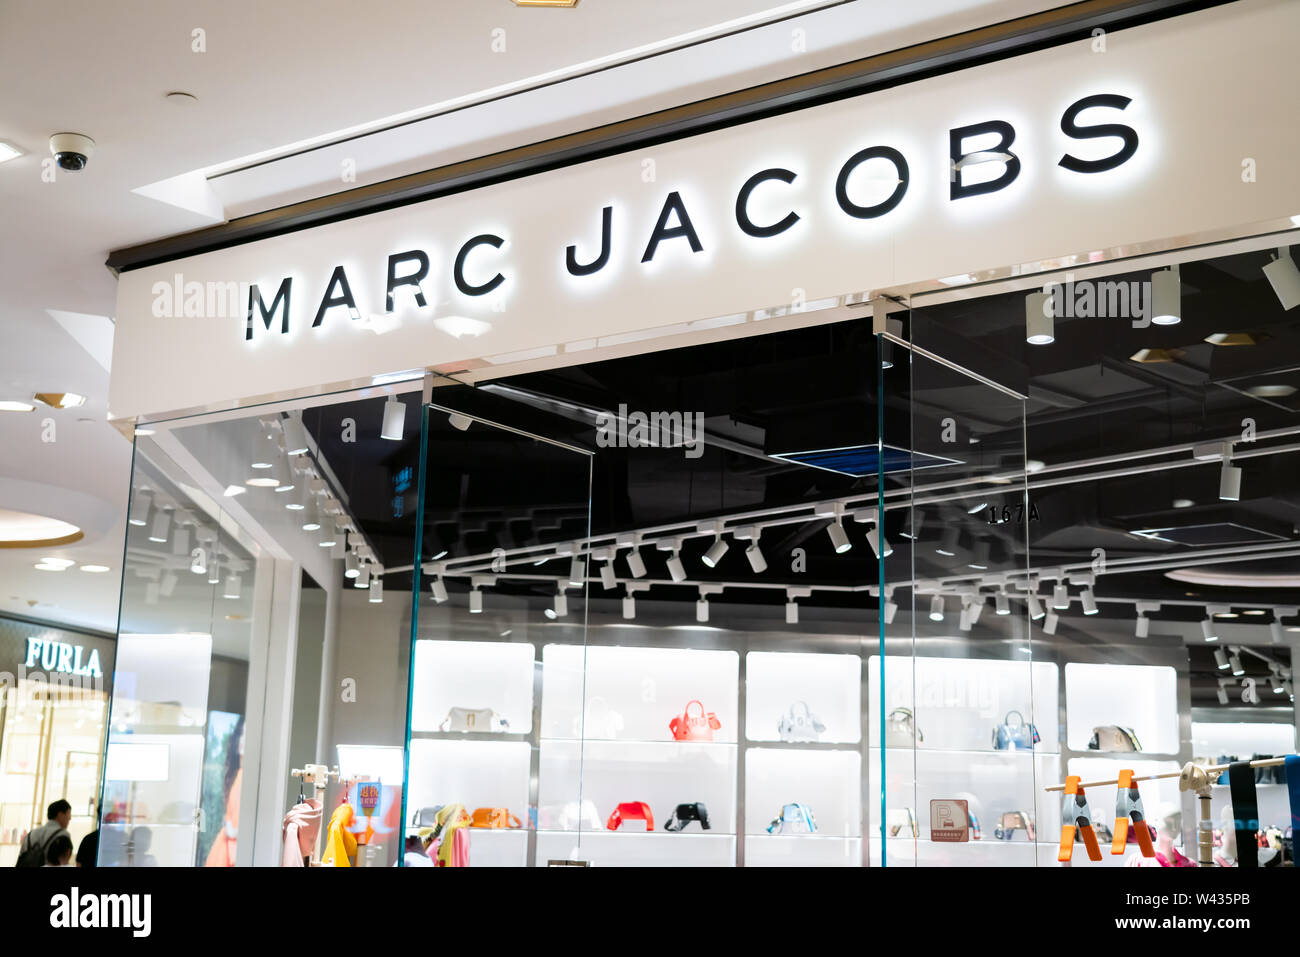 Shop Marc Jacobs Online